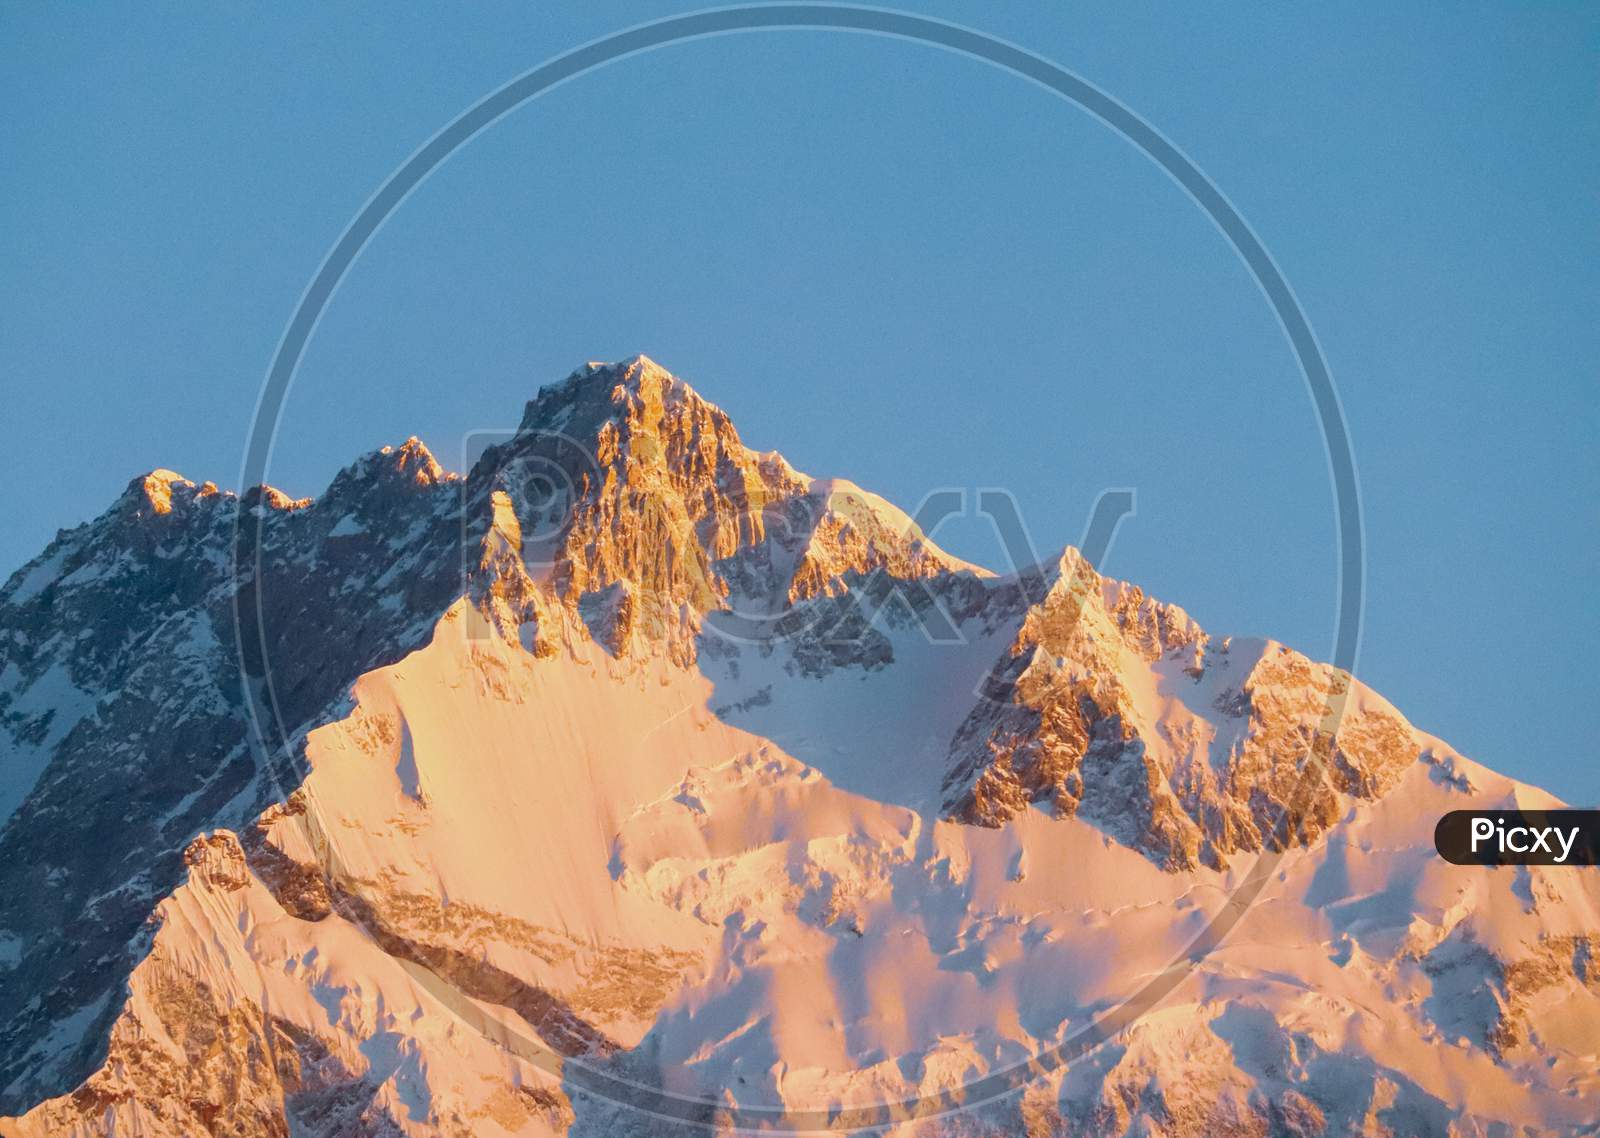 The peak of Kanchenjunga